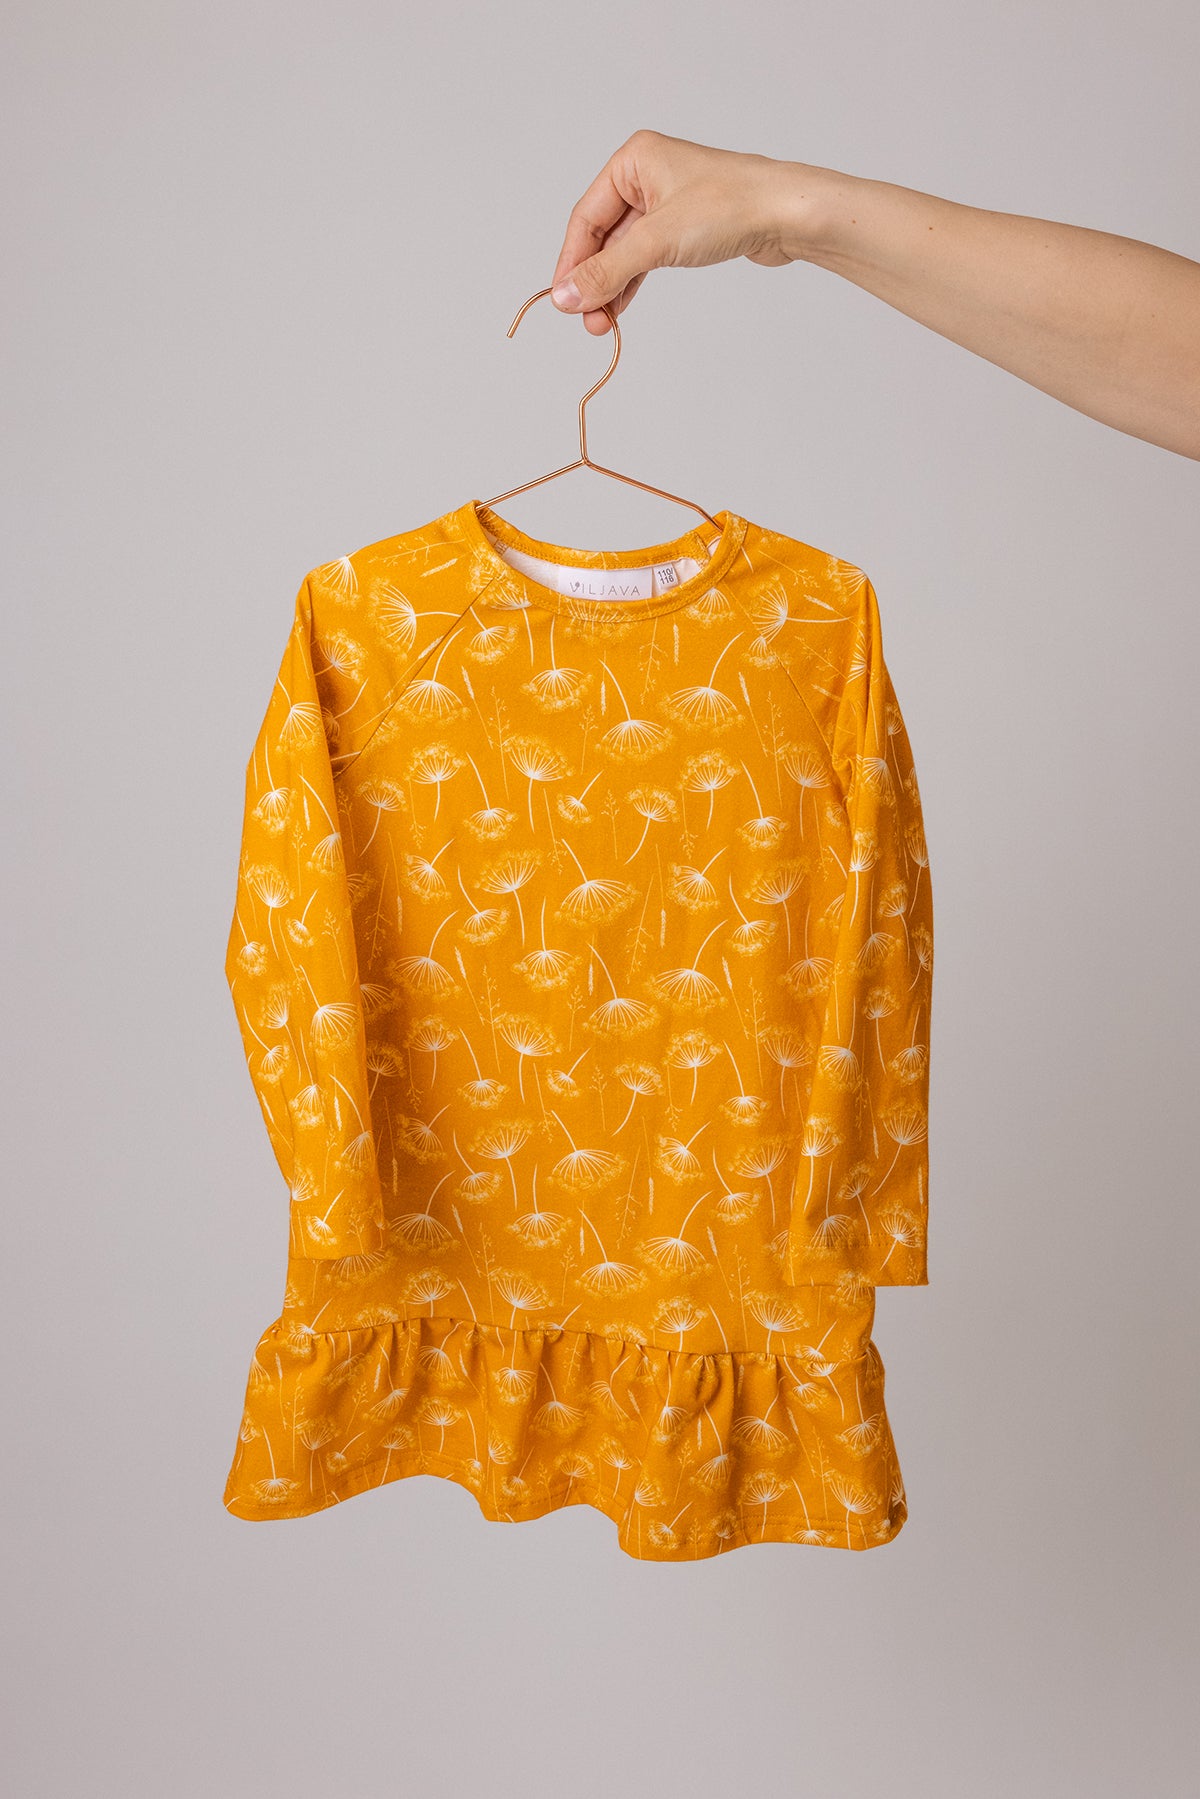 Pikkukesanto mekko (poistuva tuote)